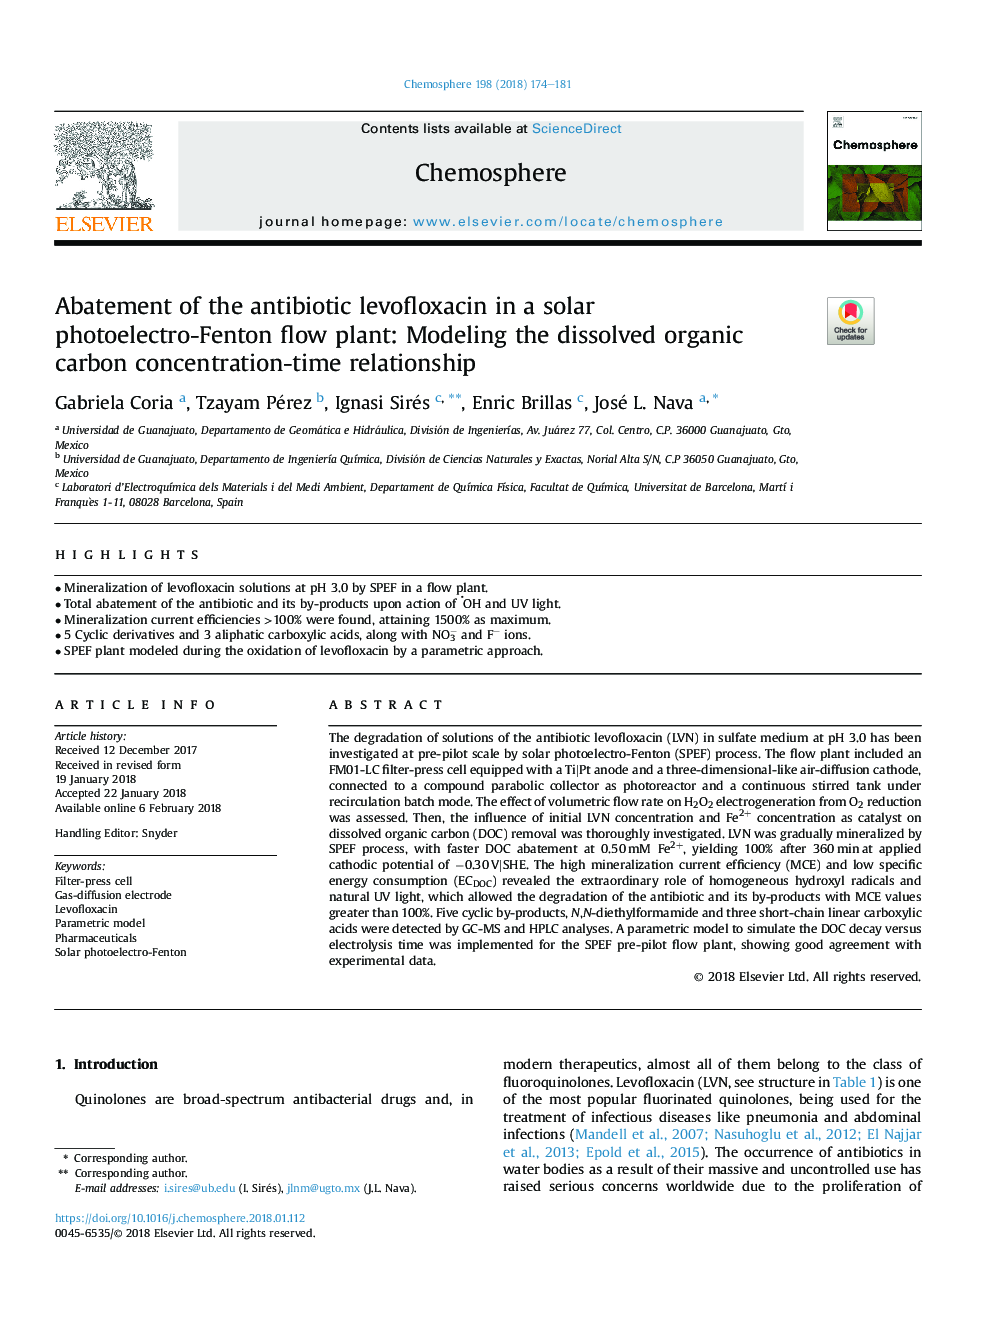 کاهش آنتی بیوتیک لووفلوکساسین در یک گیاه جابجایی فتوالکترومغناطیسی فنتون: مدلسازی رابطه غلظت کربن آلی محلول-زمان 